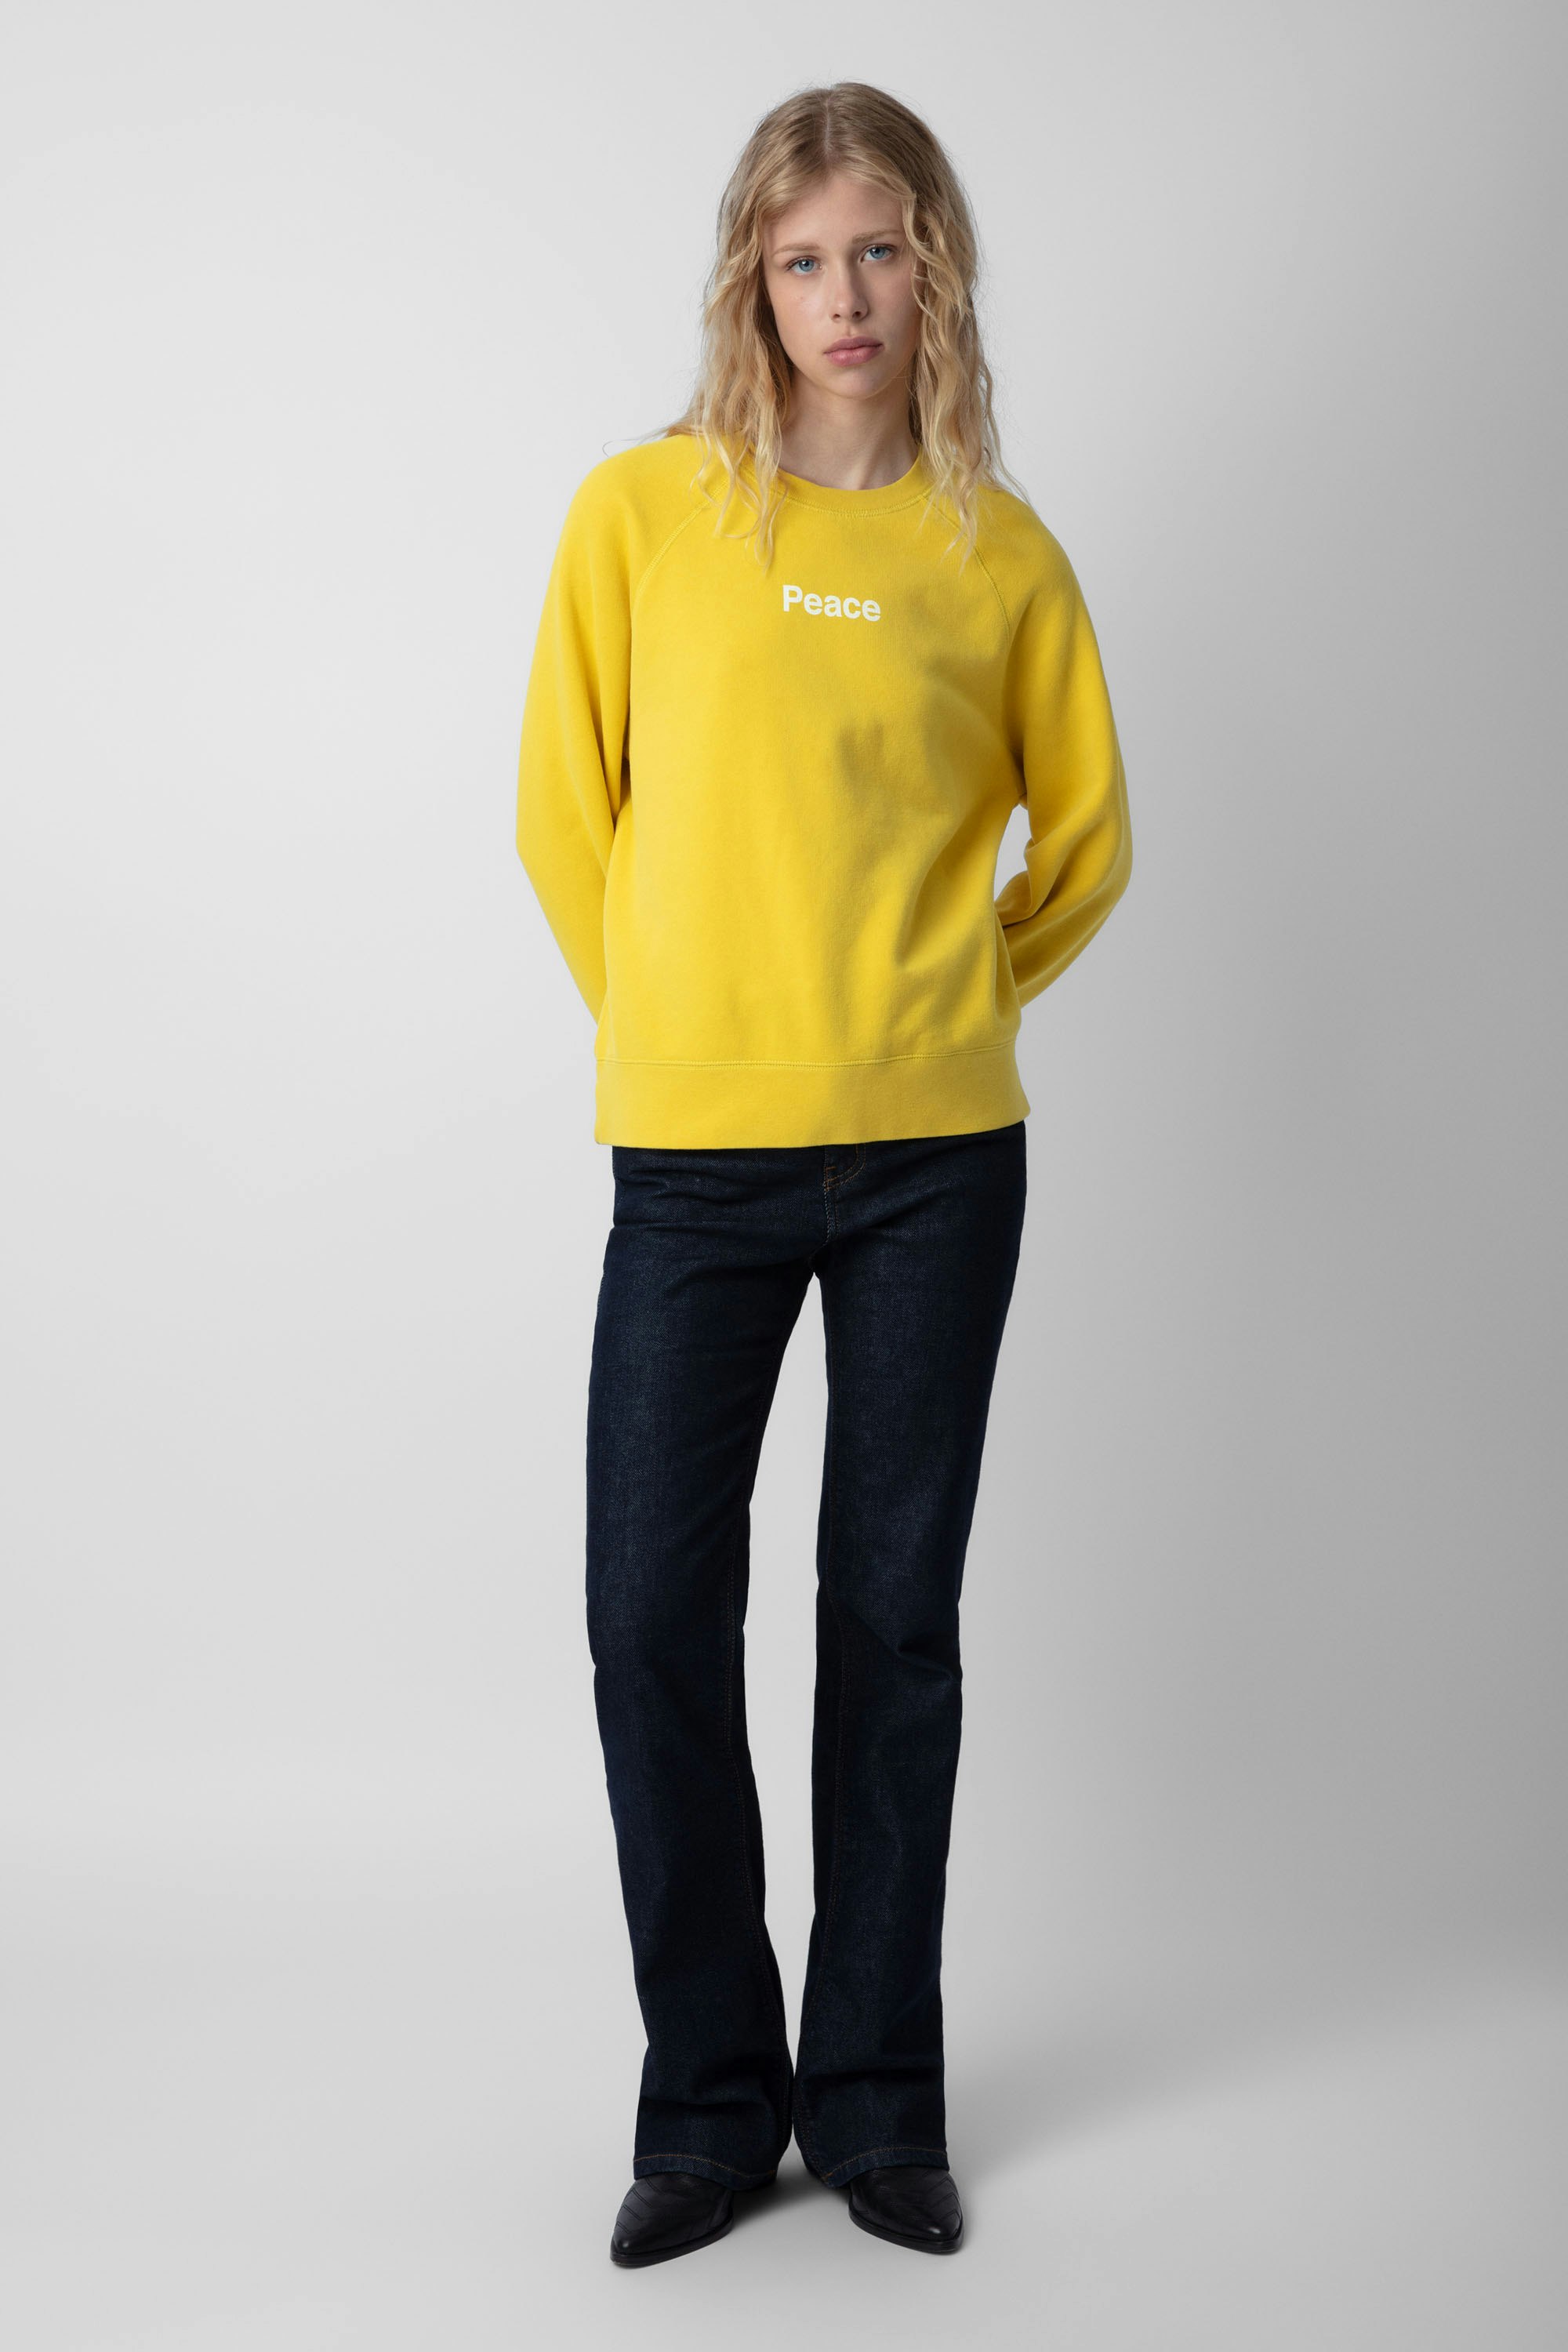 Upper Peace Sweatshirt sweatshirt yellow women | Zadig&Voltaire